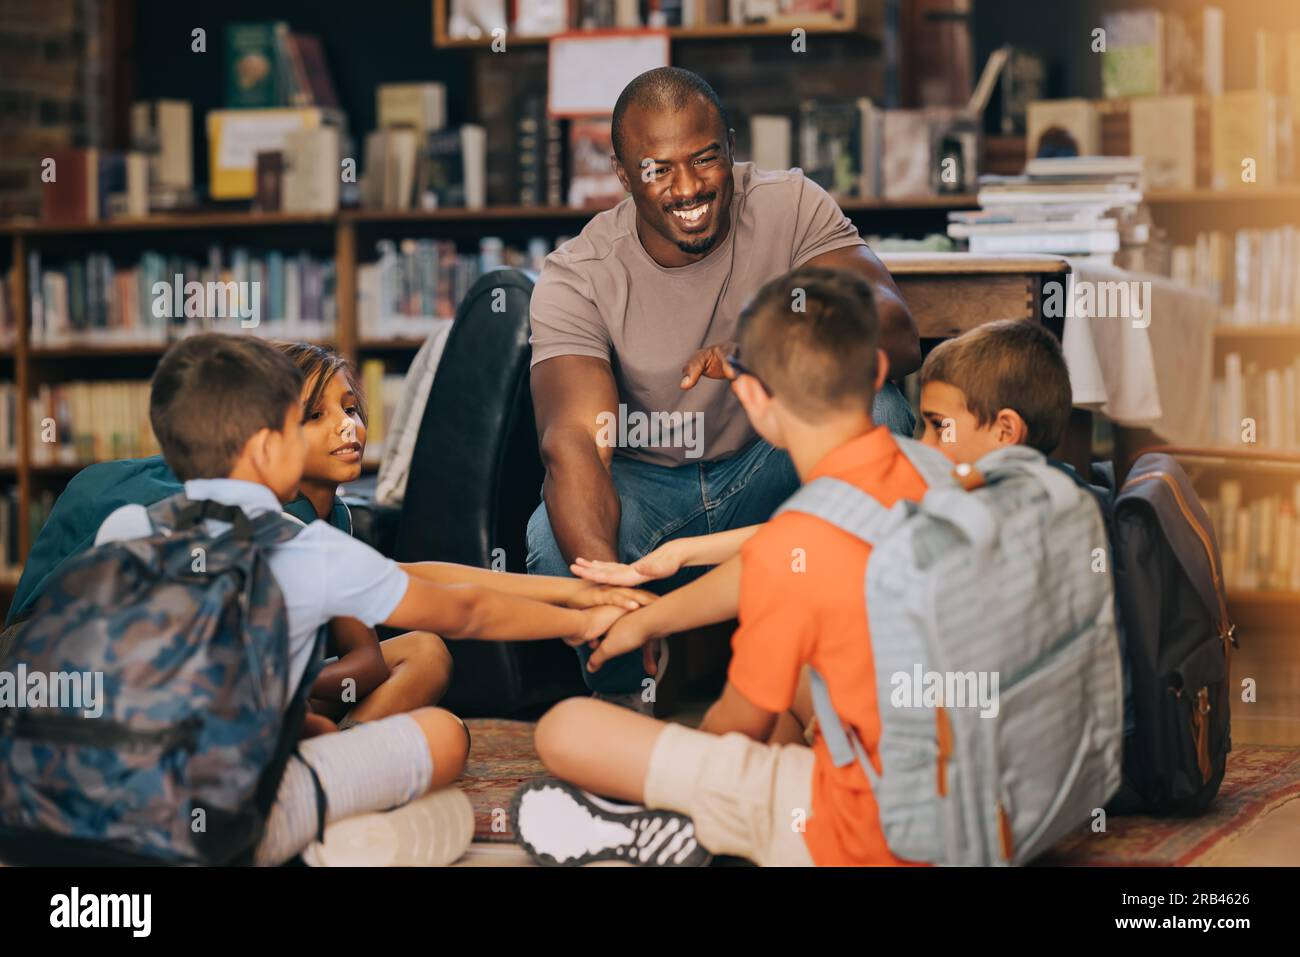 Professeur d'école mâle se blottissant avec ses élèves dans une bibliothèque. Homme enseignant un groupe d'enfants de l'école primaire. Motivation et mentorat en primaire Banque D'Images